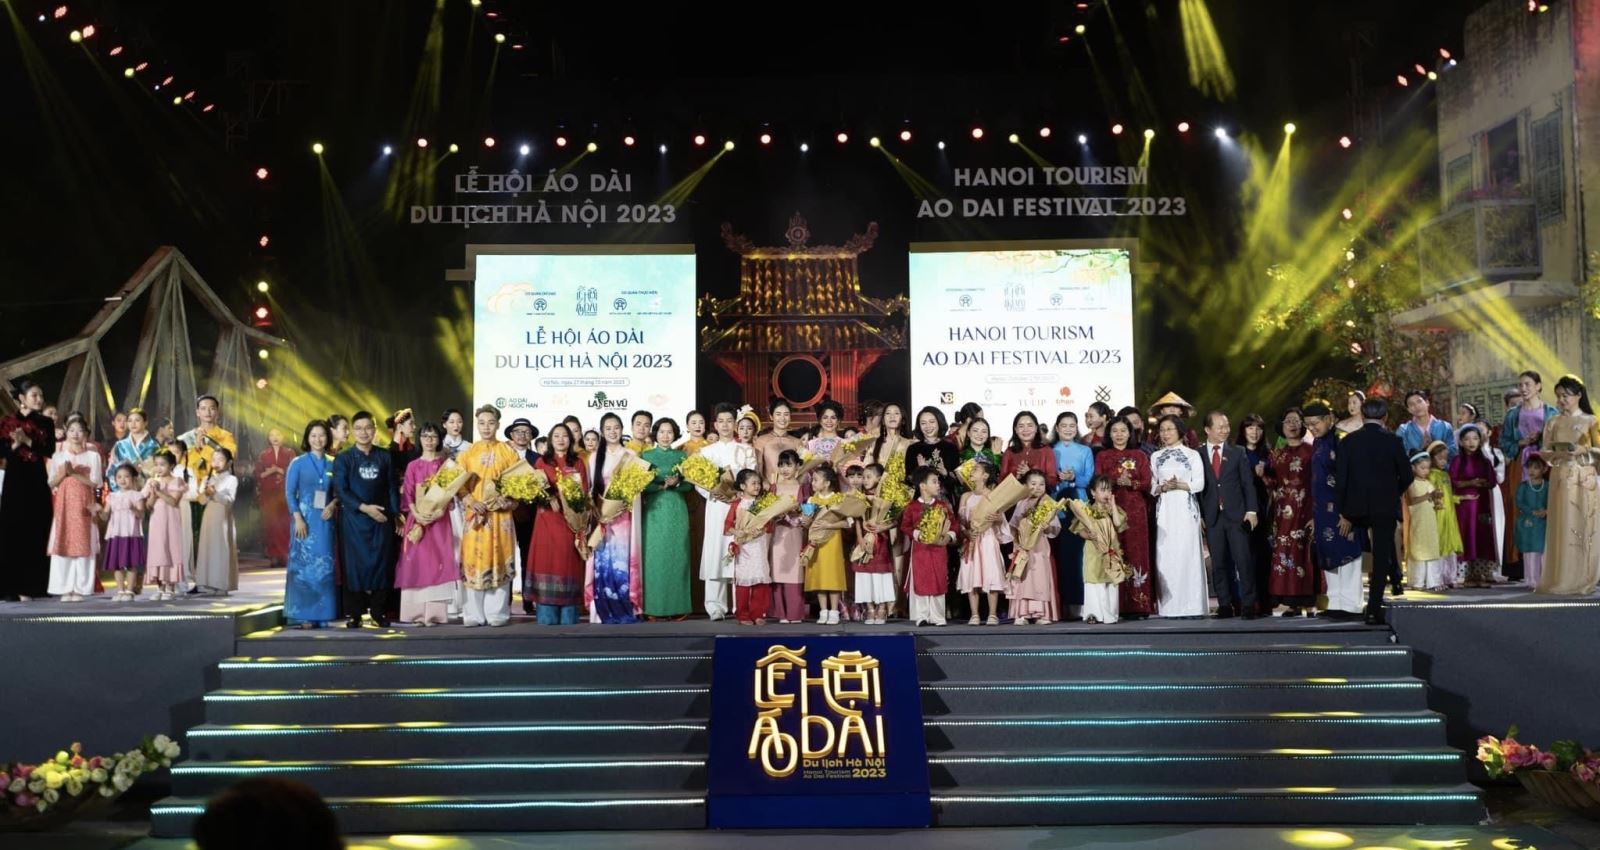  Lễ hội Áo dài du lịch Hà Nội: Tôn vinh nét đẹp văn hóa truyền thống